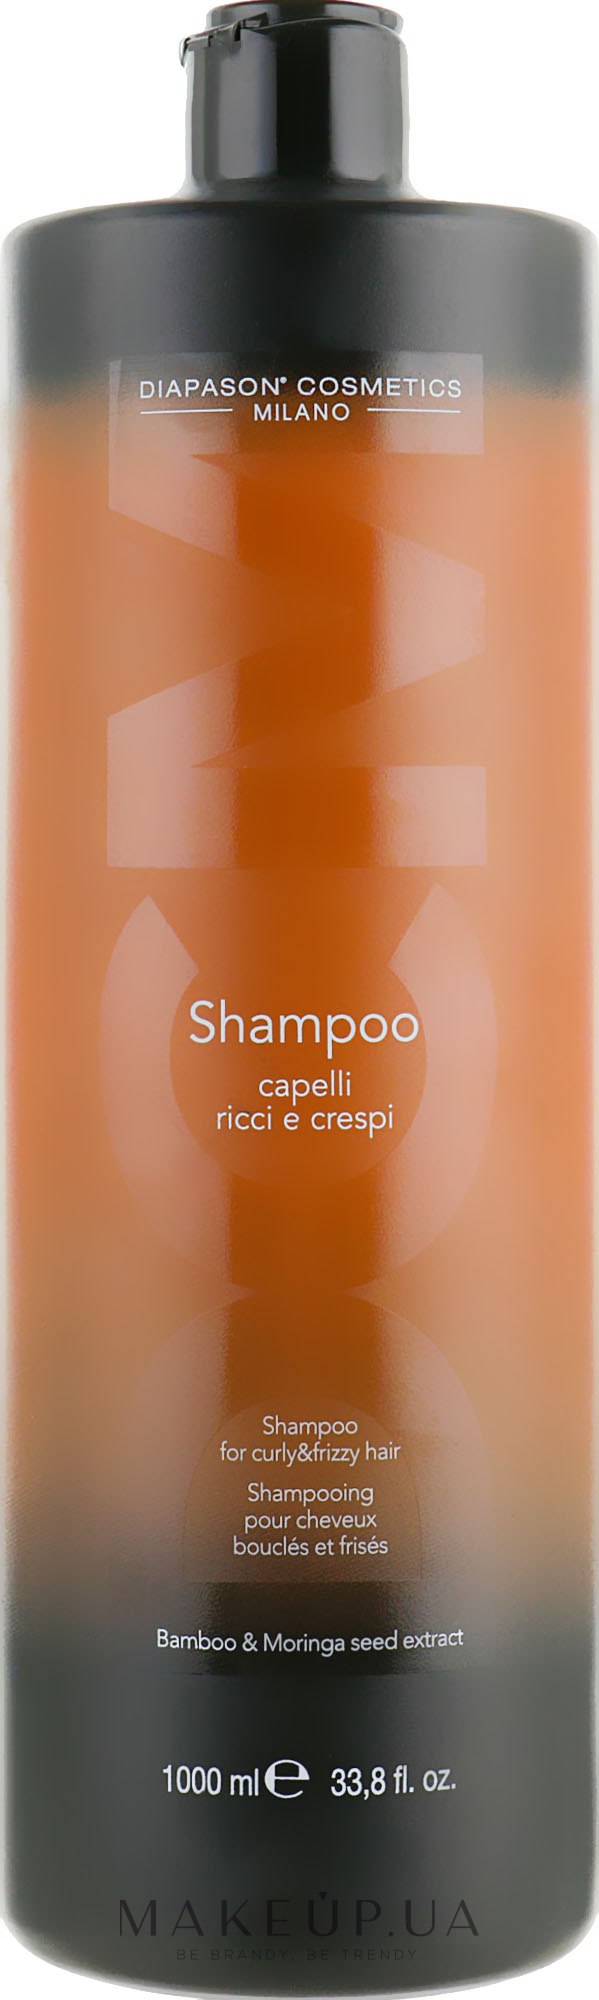 Шампунь для вьющихся и кудрявых волос с экстрактом бамбука - DCM Shampoo For Curly And Frizzy Hair — фото 1000ml